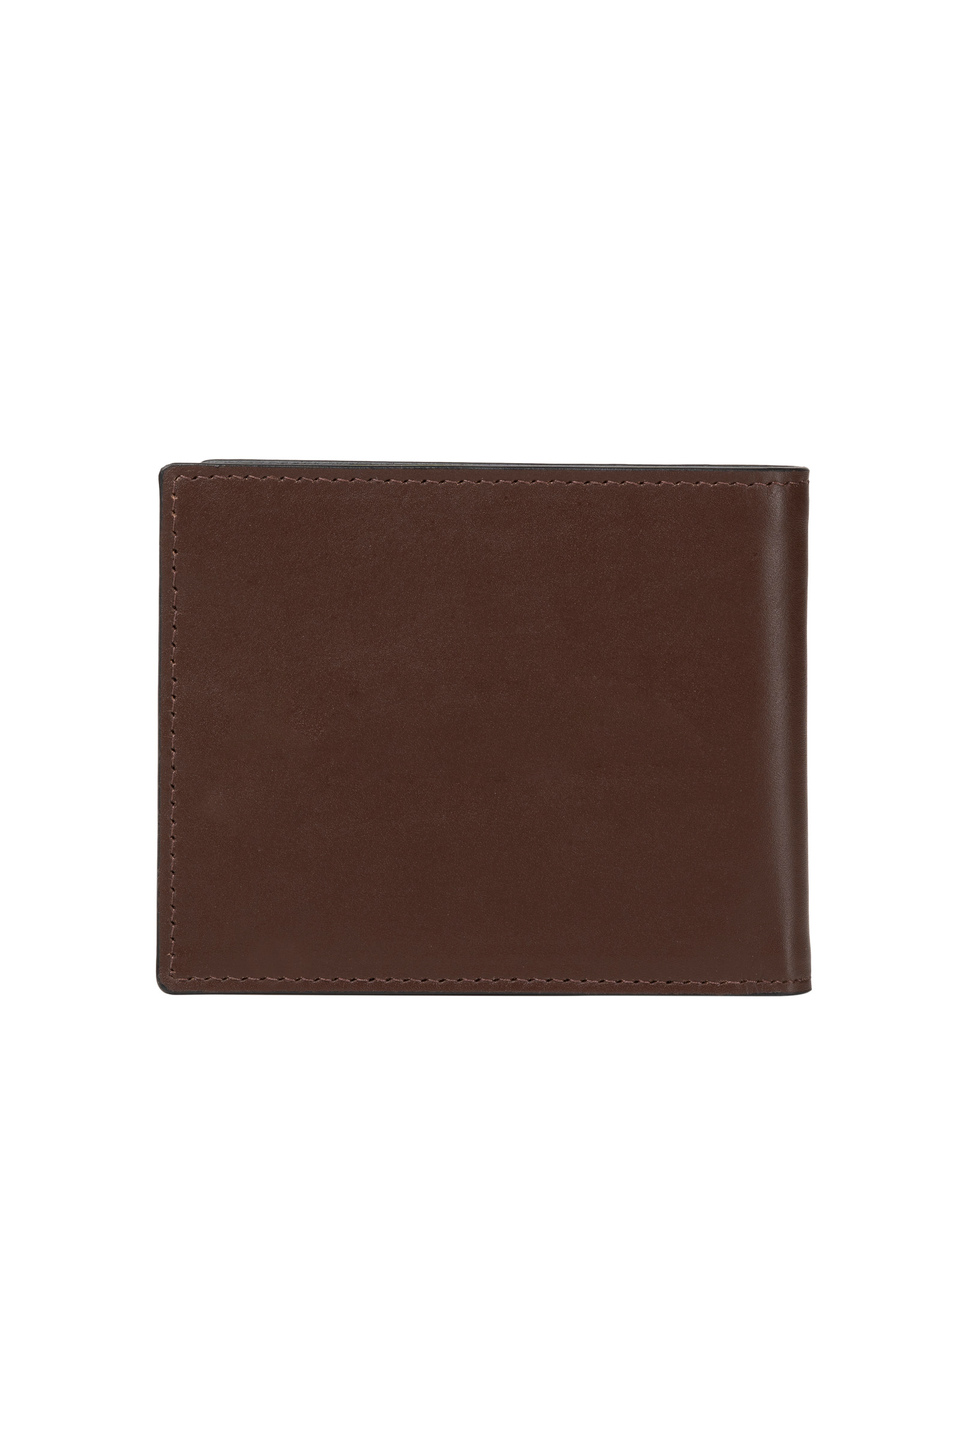 Men's leather wallet - Pablo | La Martina - Official Online Shop